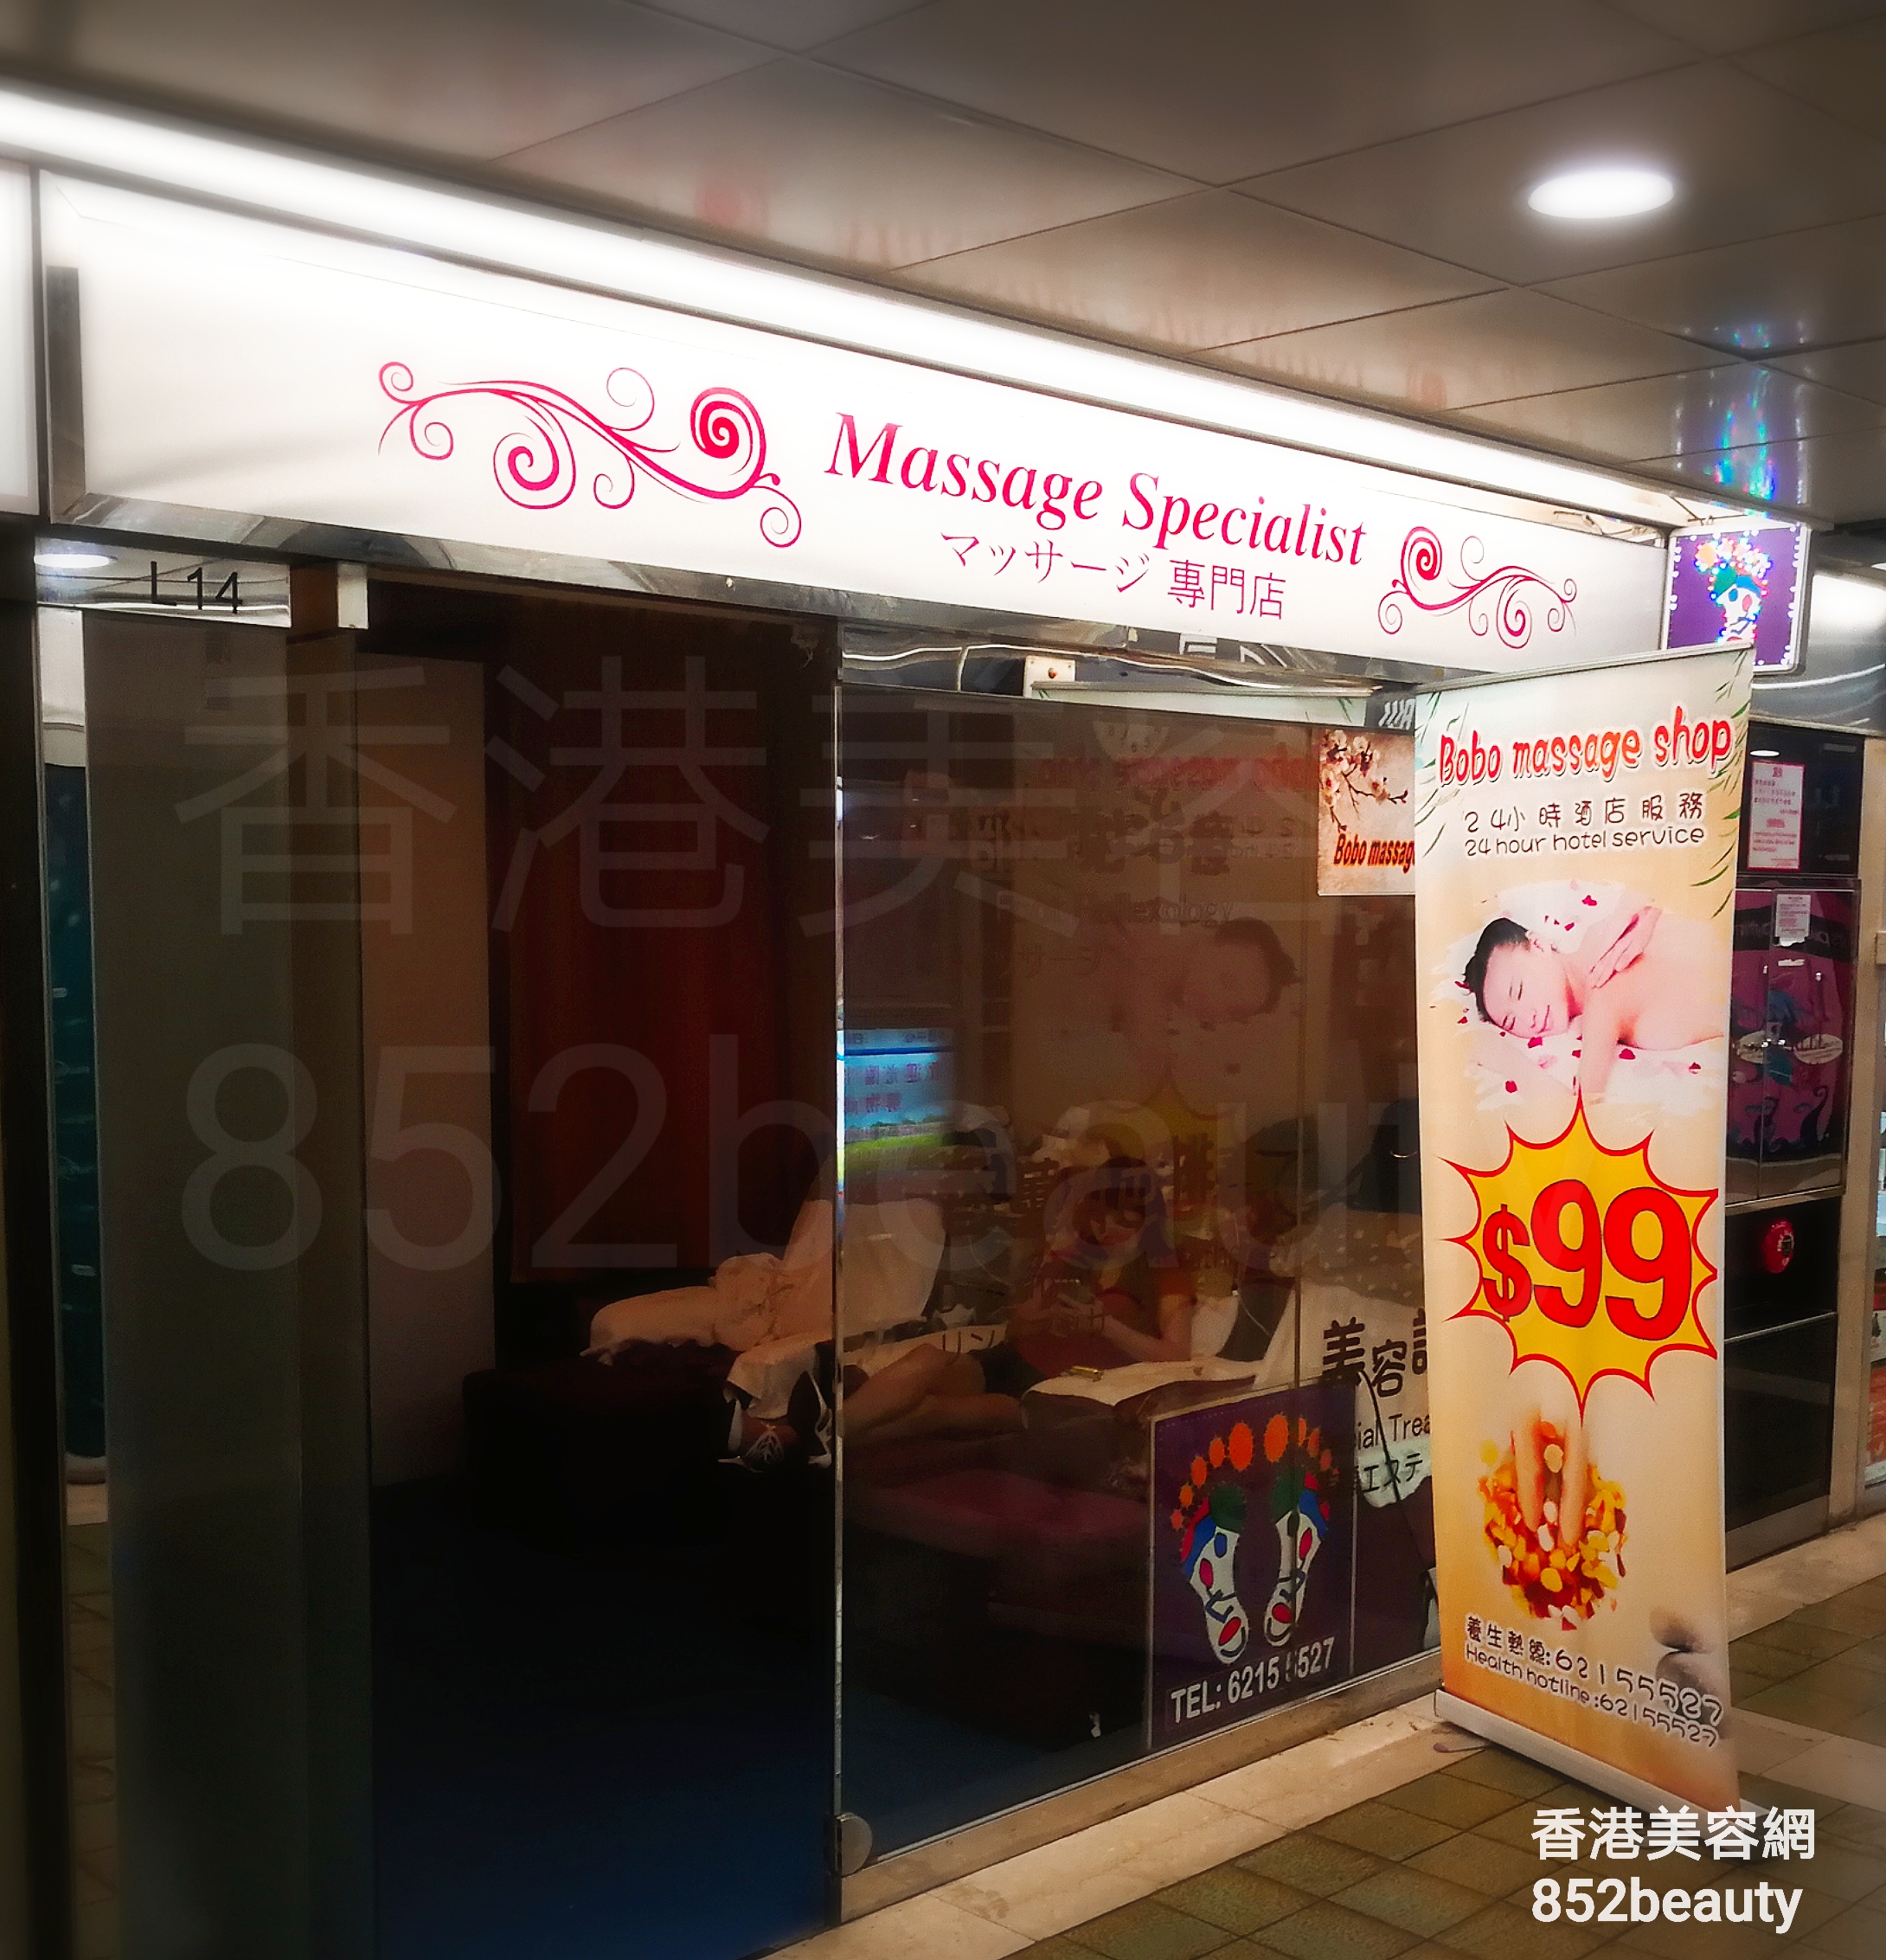 按摩/SPA: BoBo massage shop